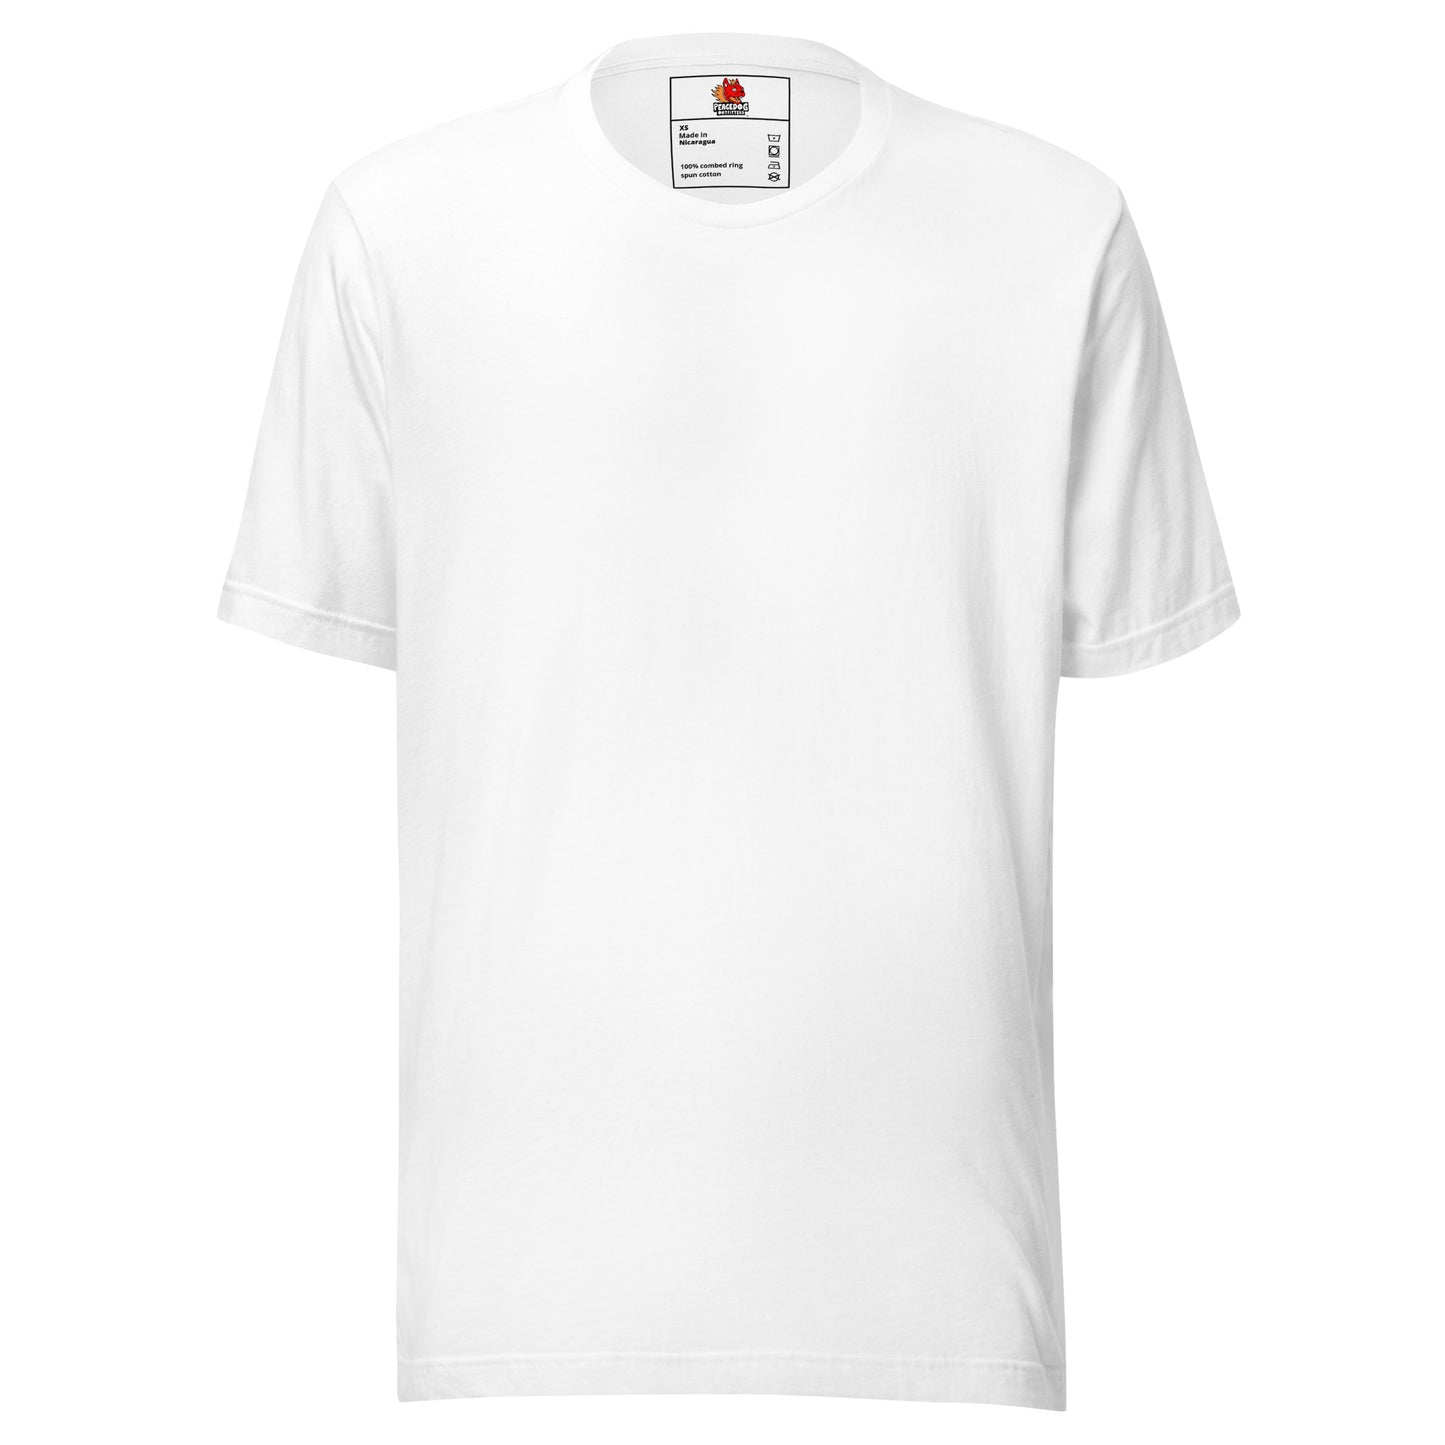 Zodiac Leo T-shirt